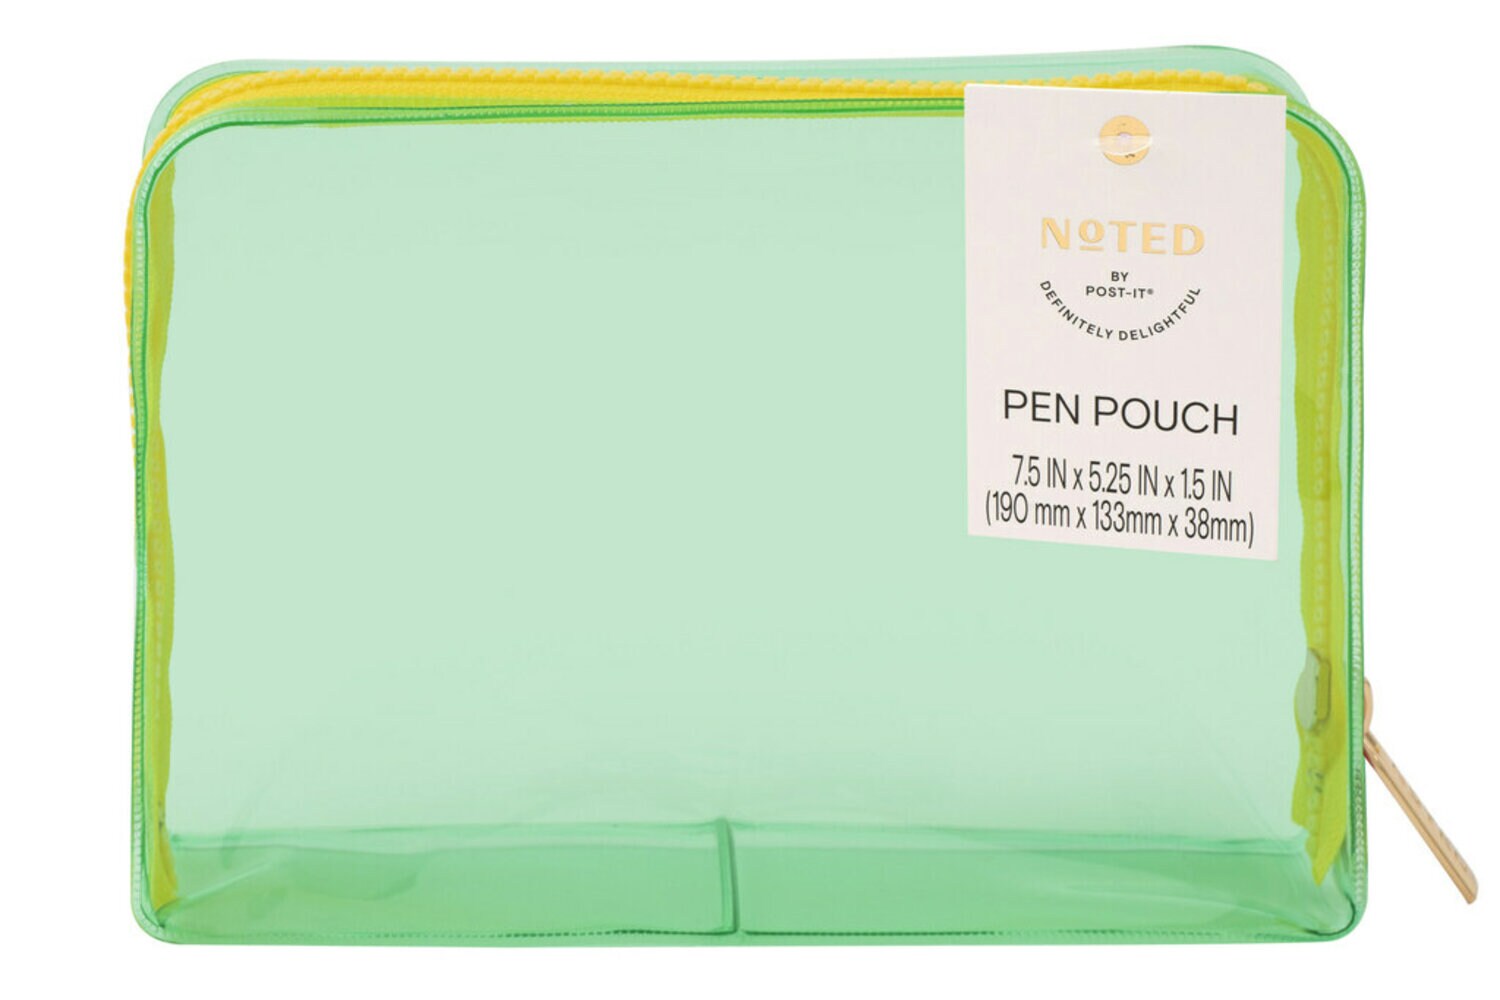 7100290349 - Post-it Pen Pouch NTDW-PP-4, One Pen Pouch